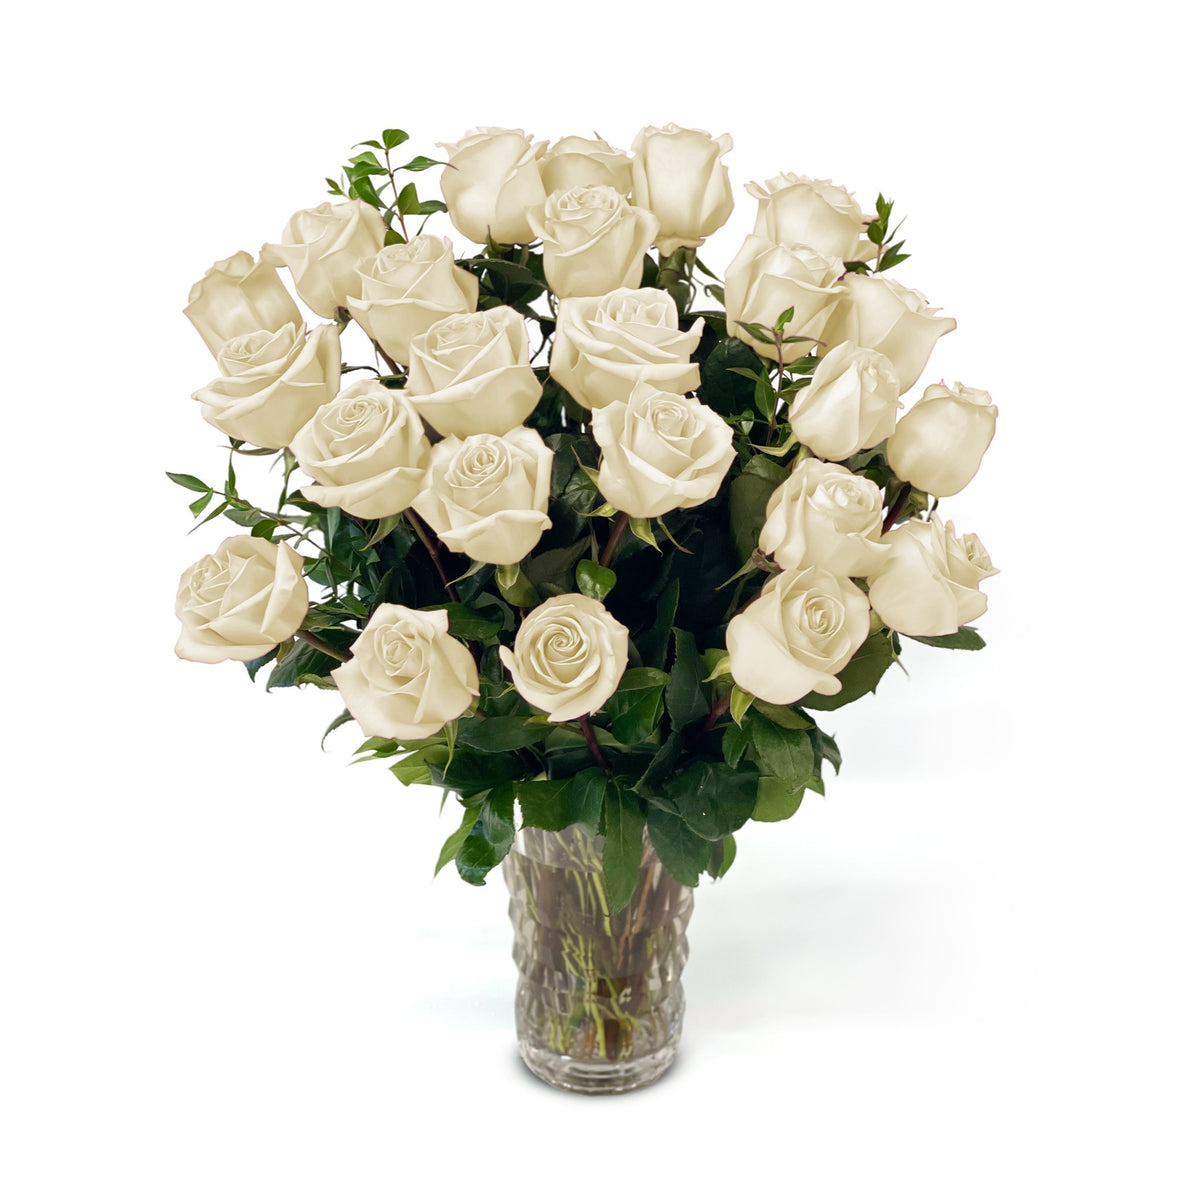 Fresh Roses in a Crystal Vase | White - 2 Dozen - Roses